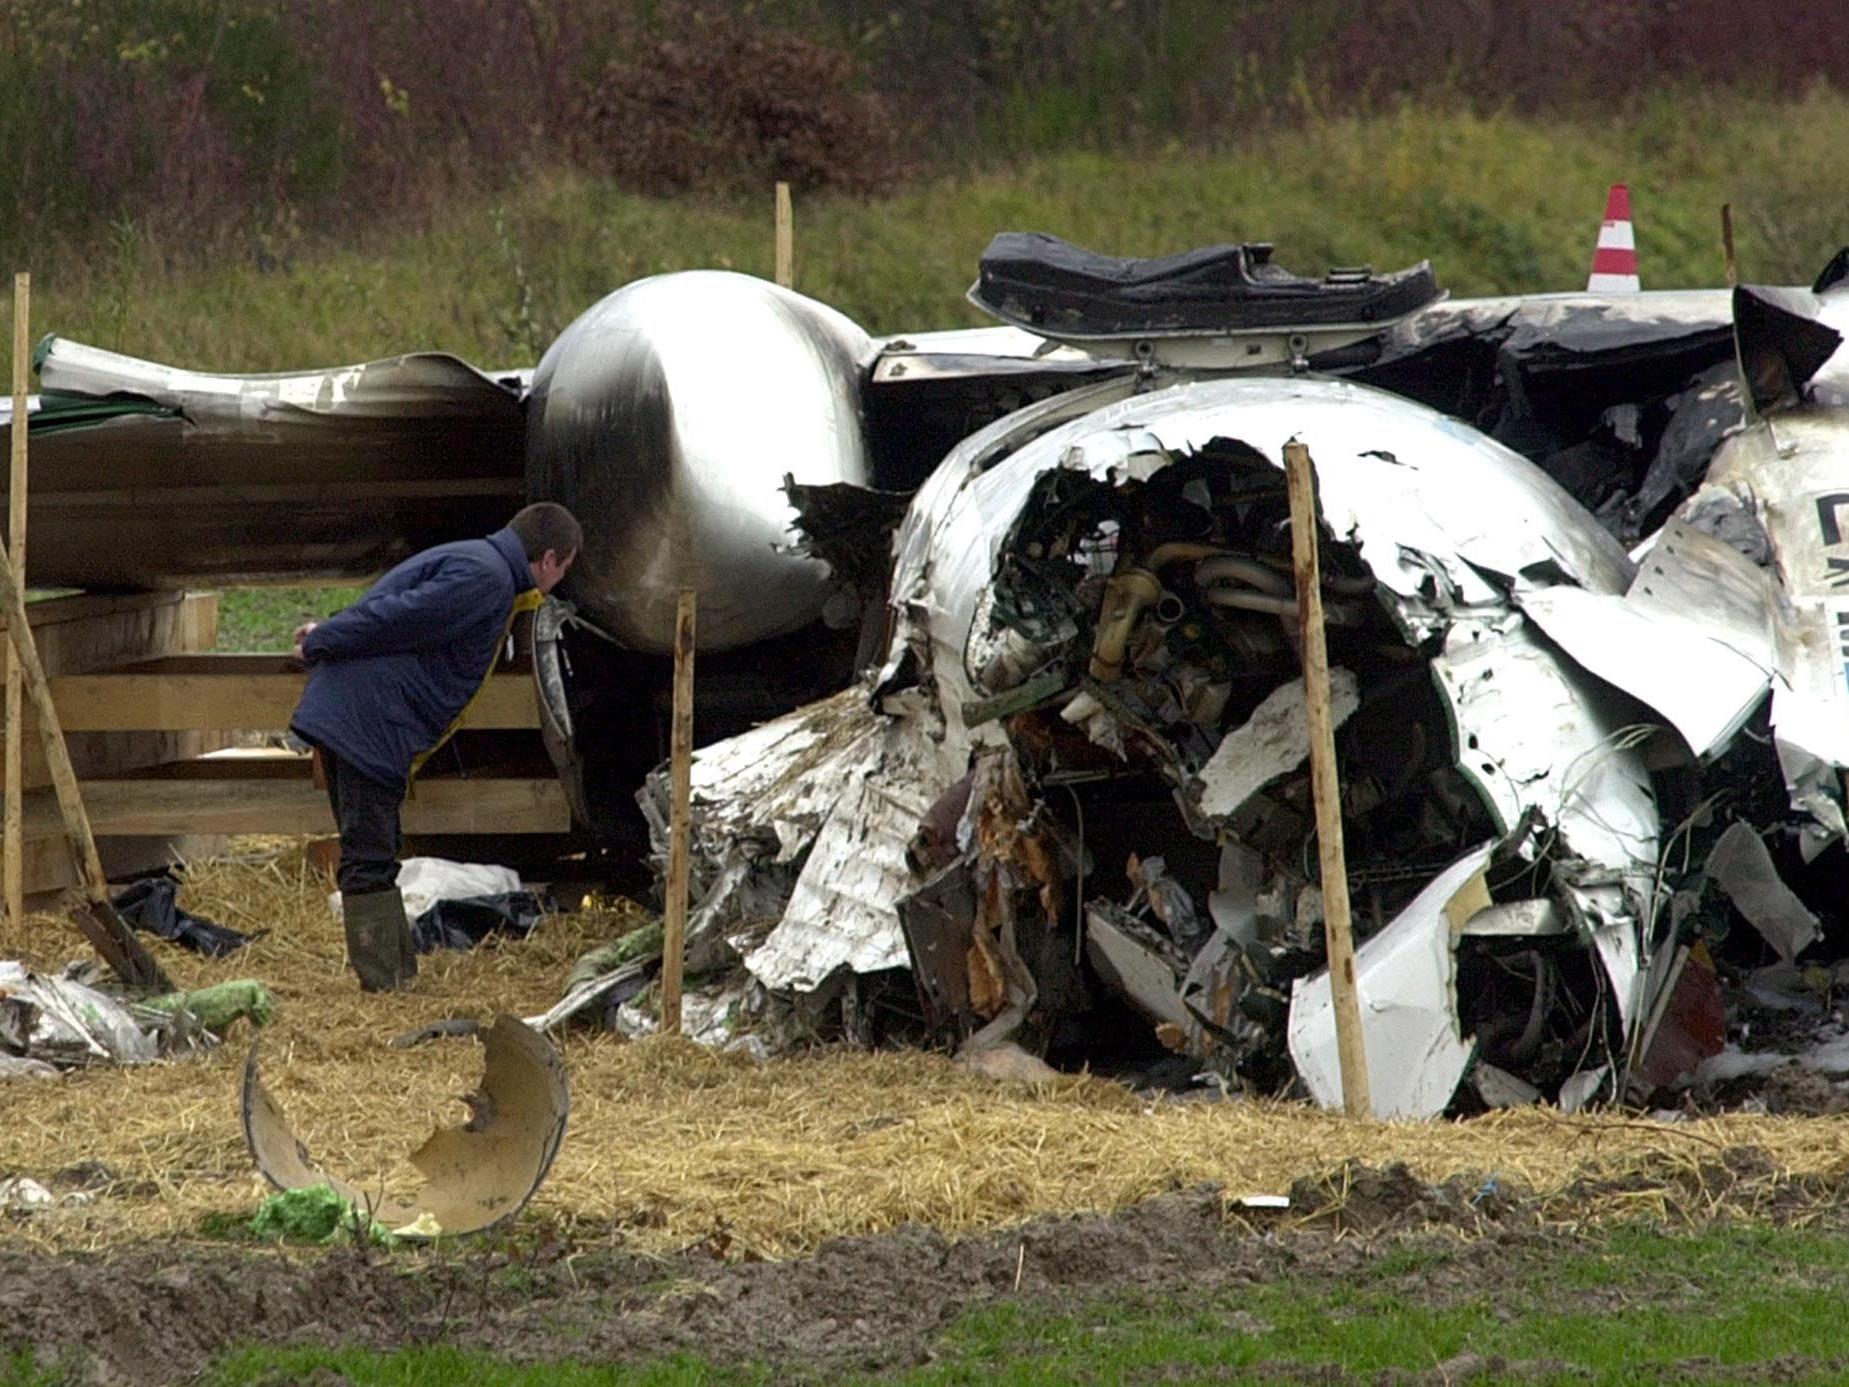 20 Menschen kamen im November 2002 beim Absturz einer Luxair-Fokker ums Leben.